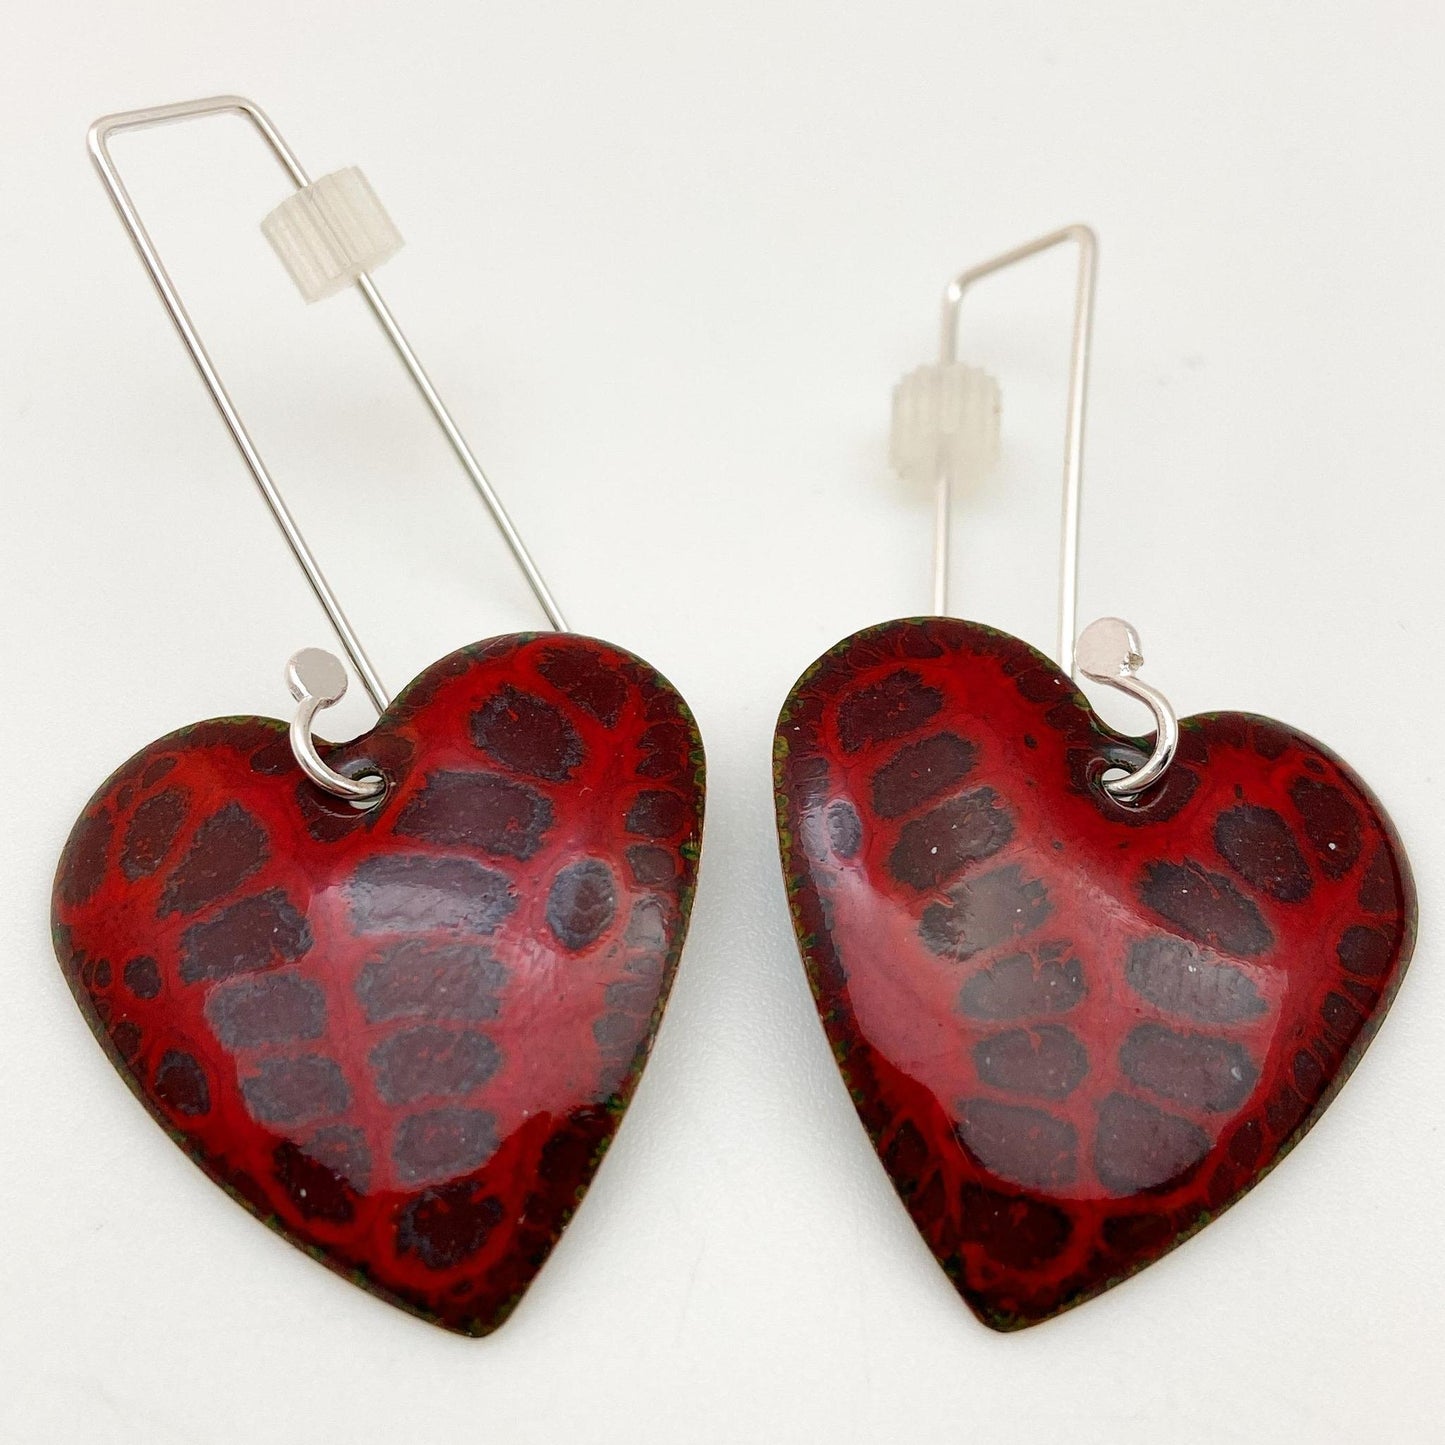 Earrings - Purple Print on Red Hearts - Enamel on Copper